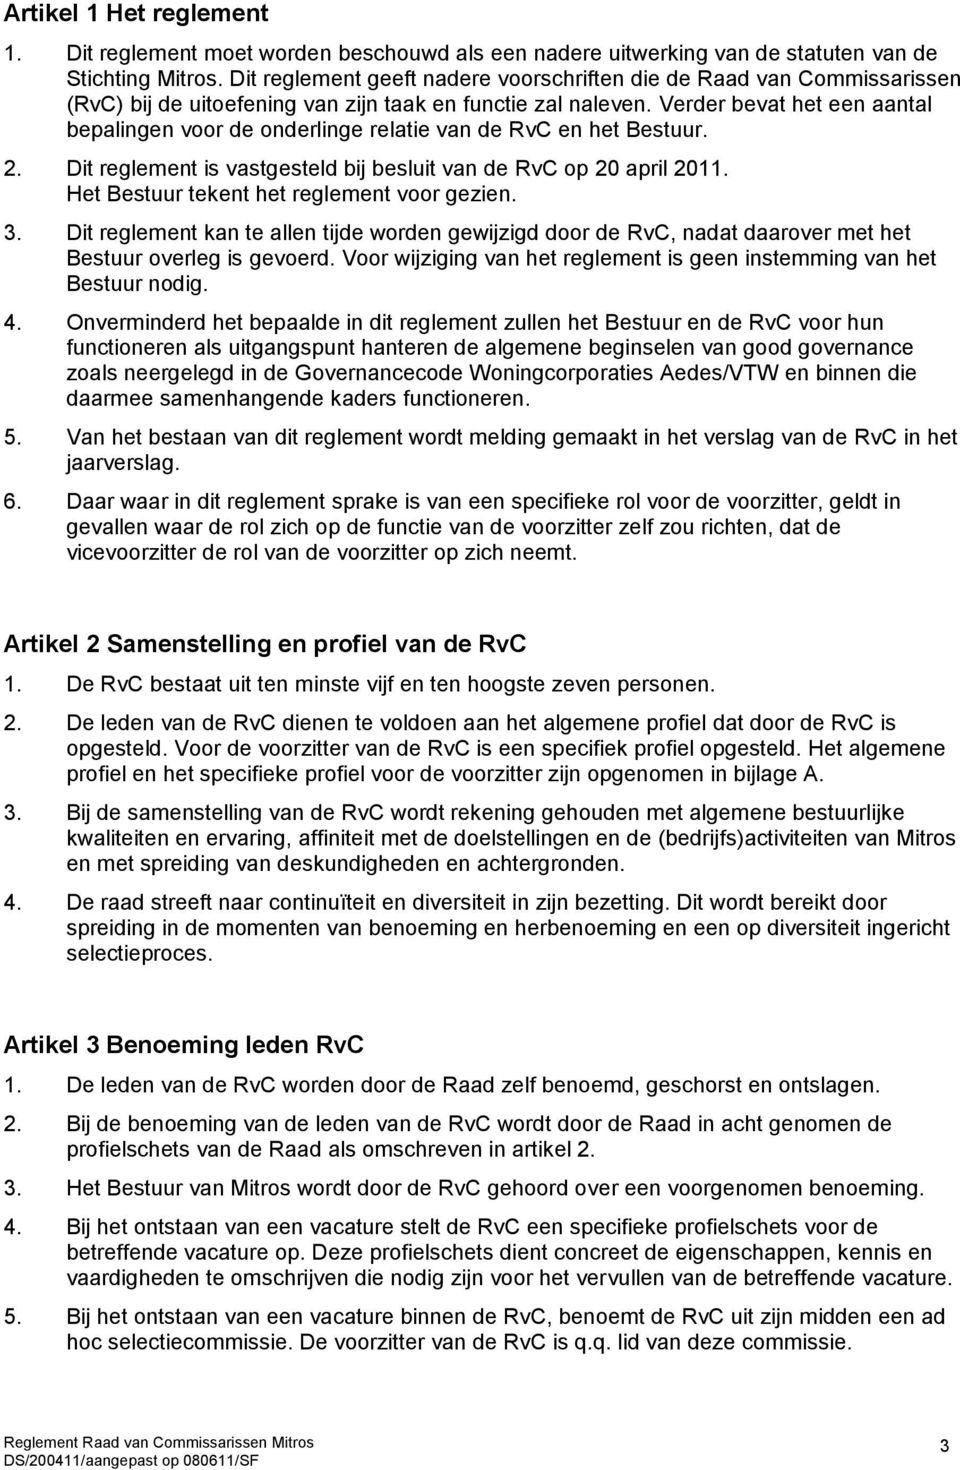 Verder bevat het een aantal bepalingen voor de onderlinge relatie van de RvC en het Bestuur. 2. Dit reglement is vastgesteld bij besluit van de RvC op 20 april 2011.